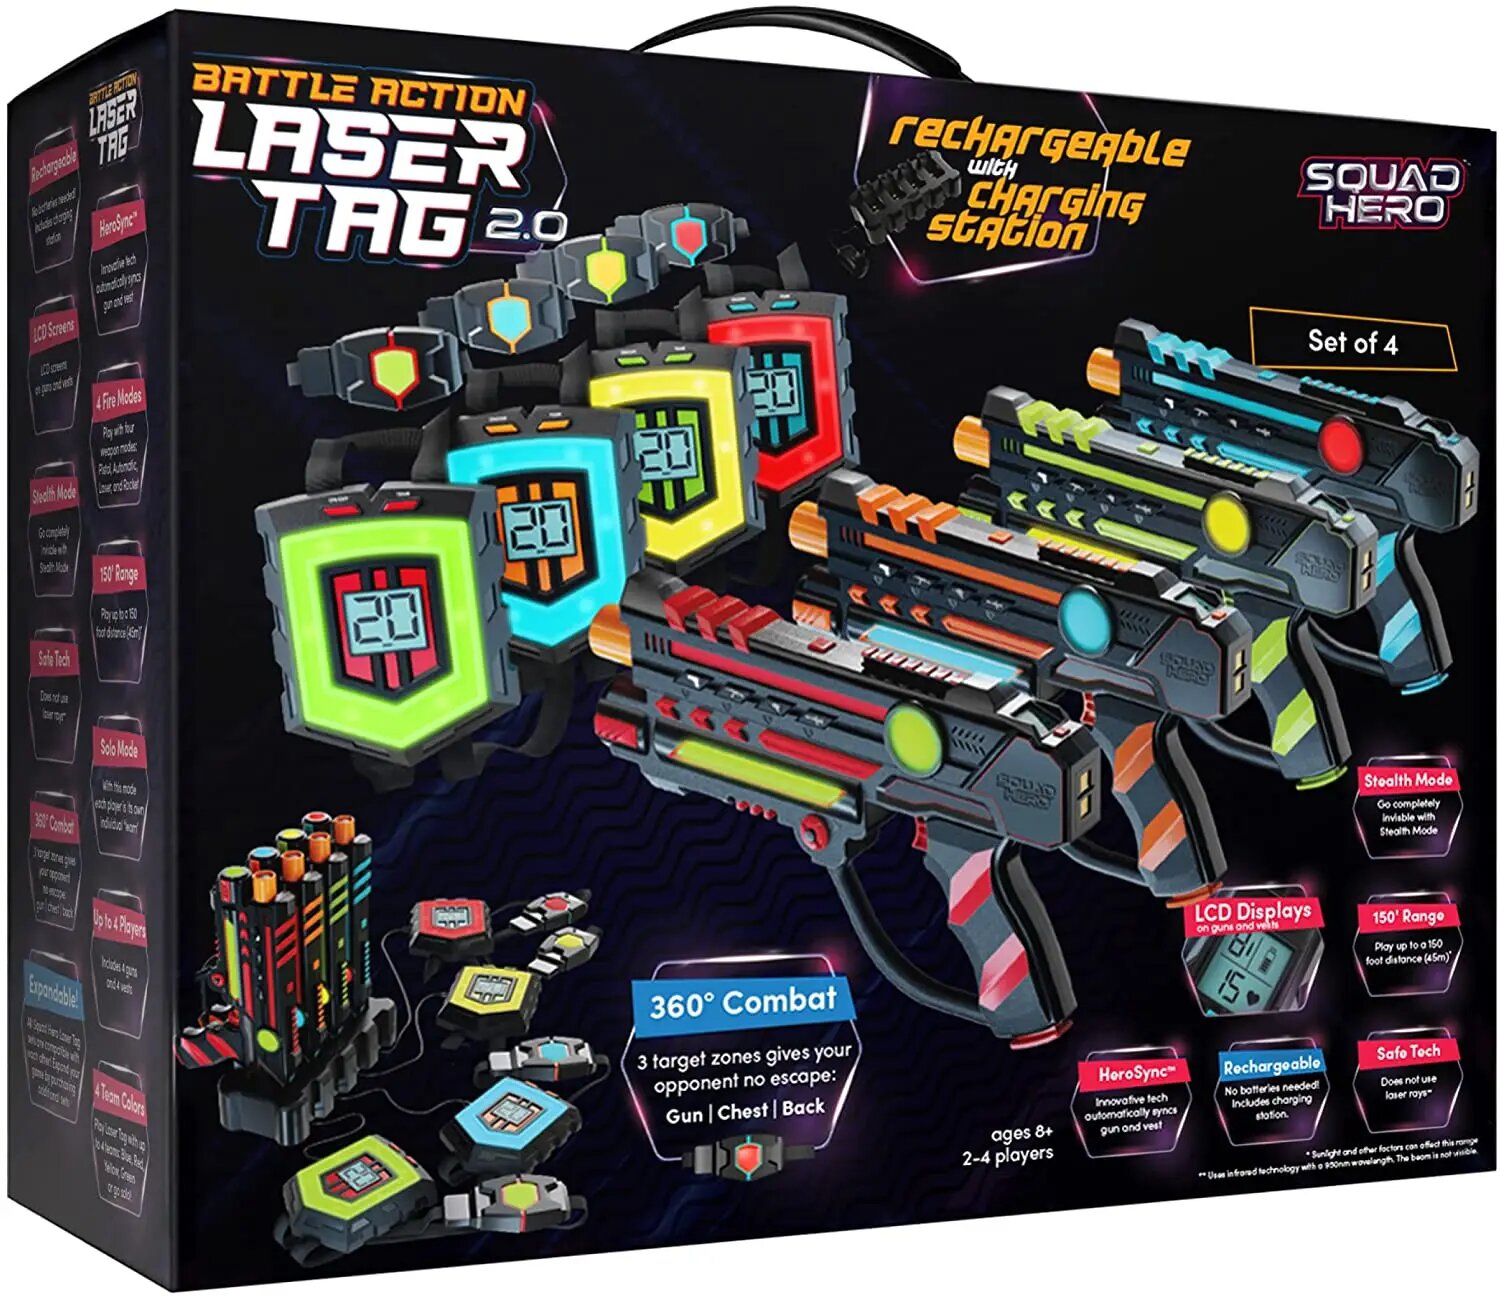 Squad Hero Battle Action Laser Tag 2.0 Das Original aus den USA Top Outdoor Geschenk